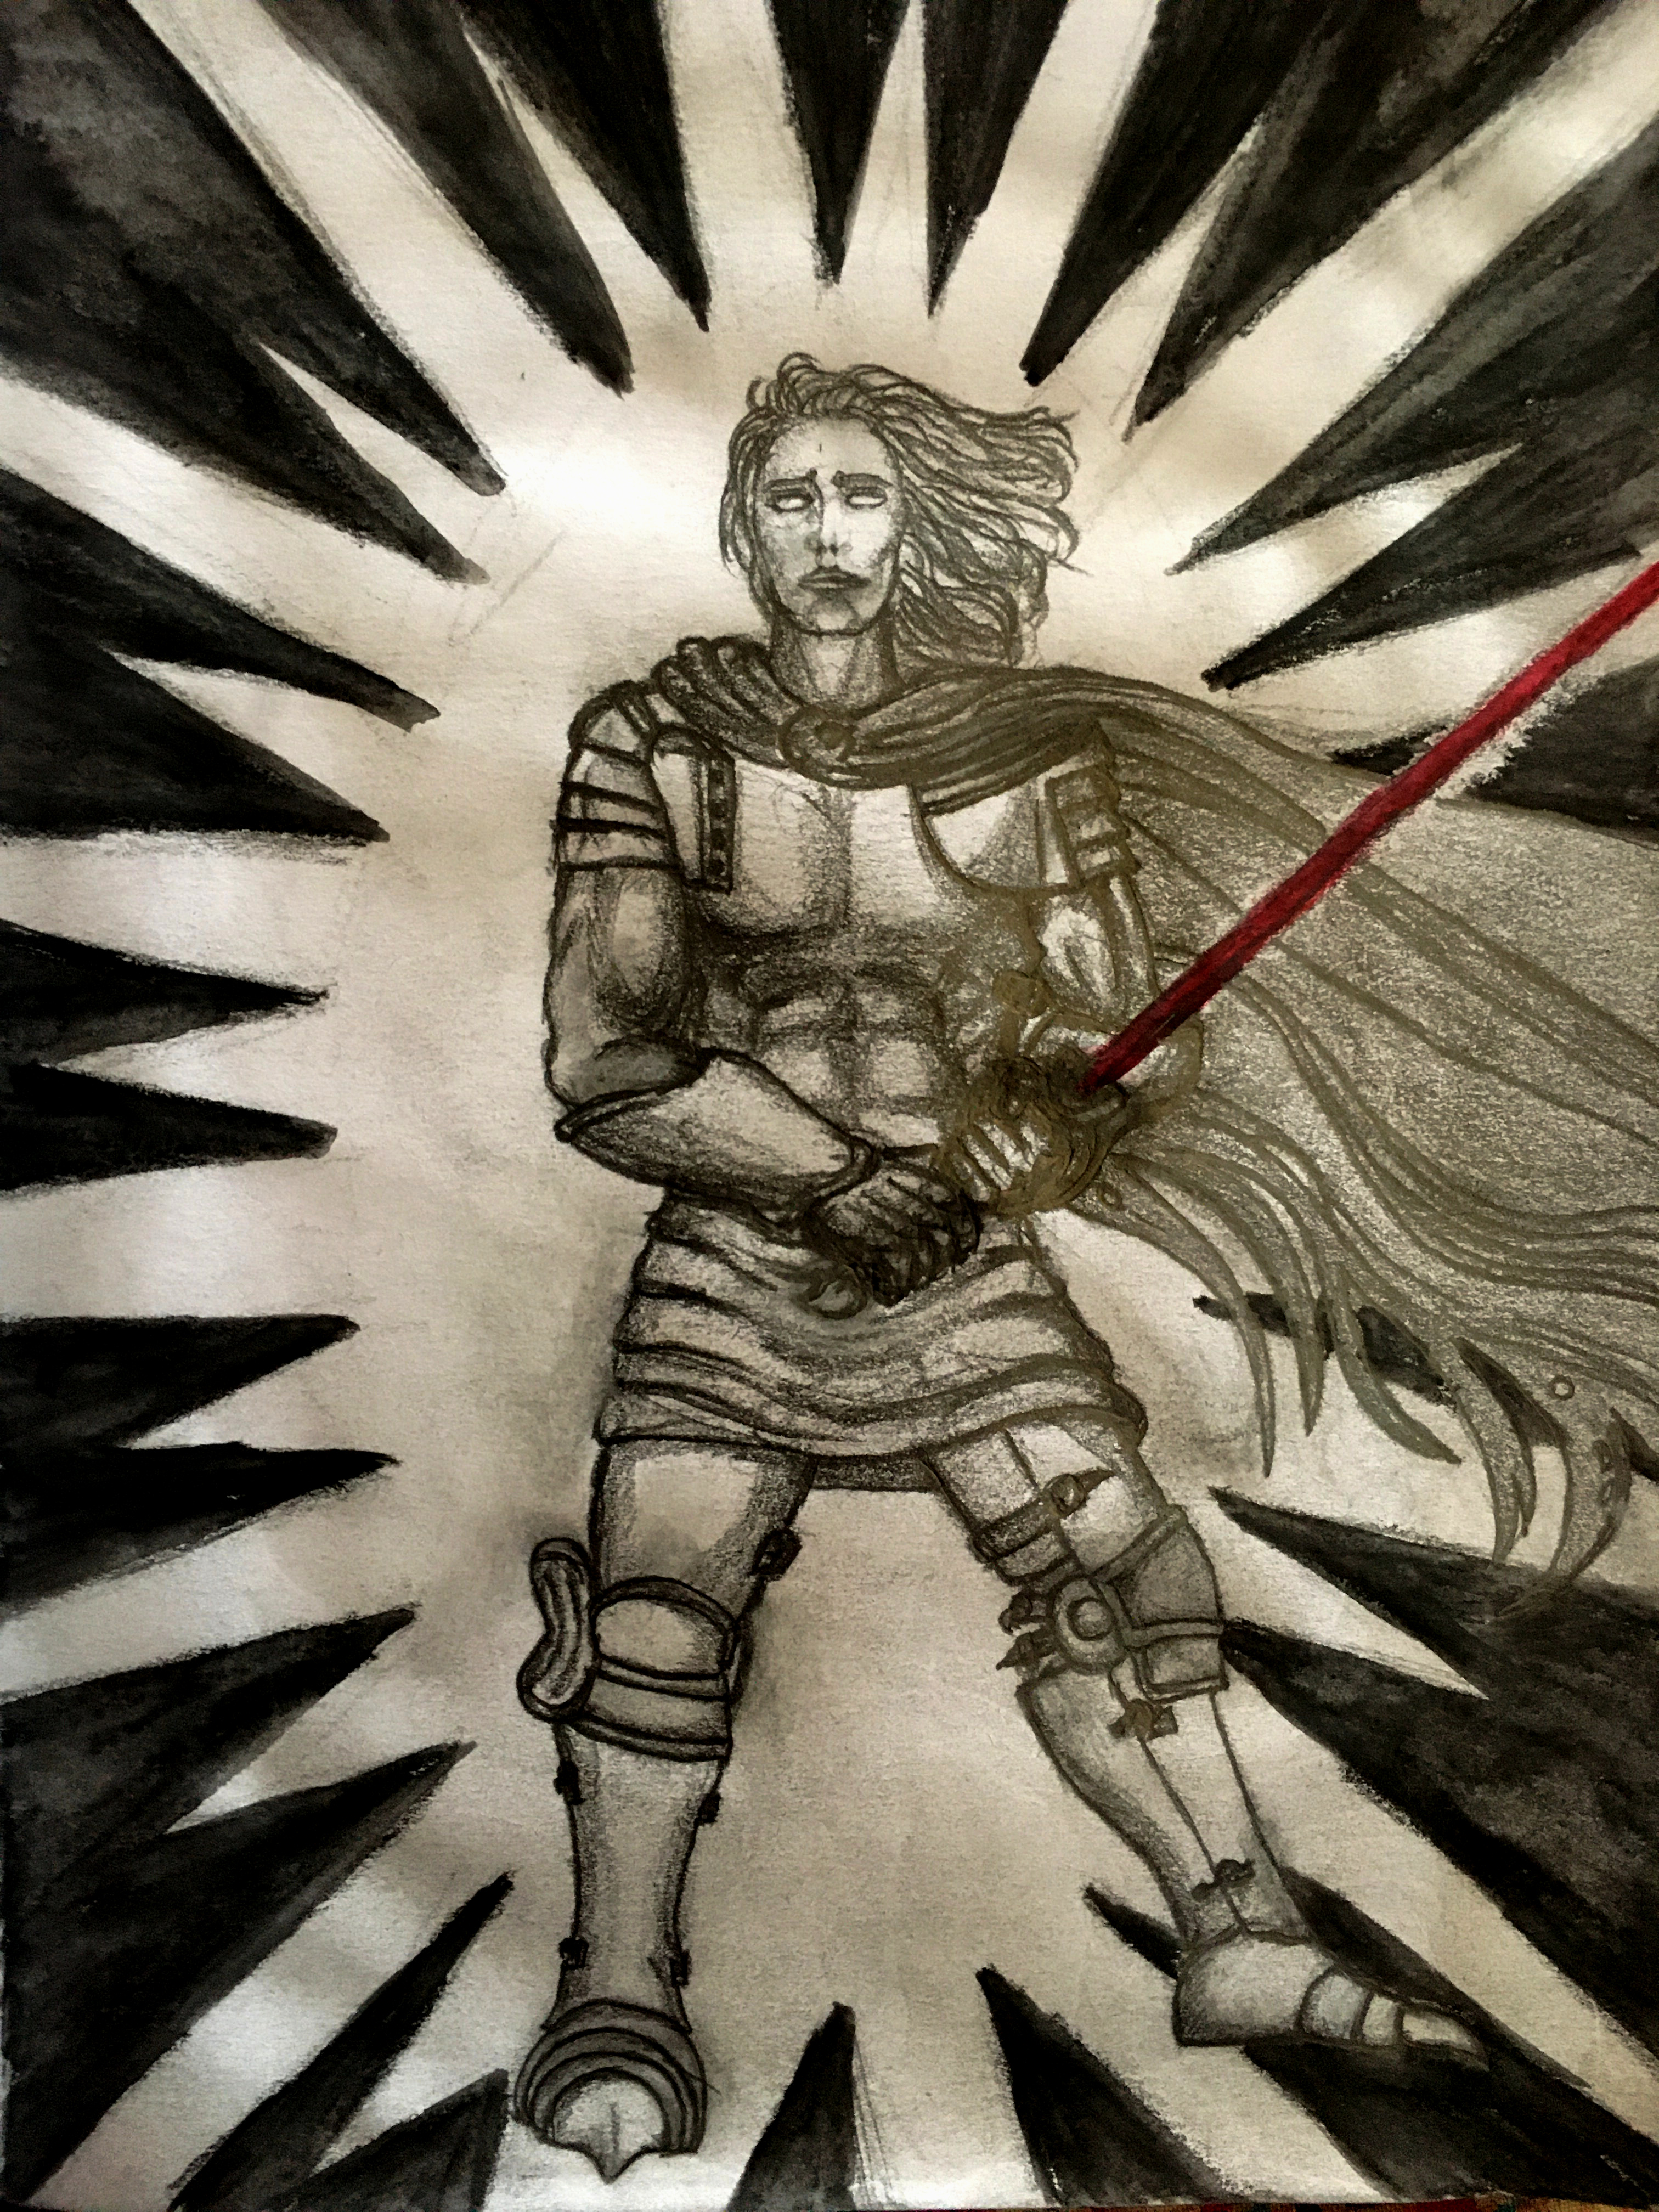 Lightbringer, the Red Sword of Heroes; but also: Jon Snow as Lightbringer